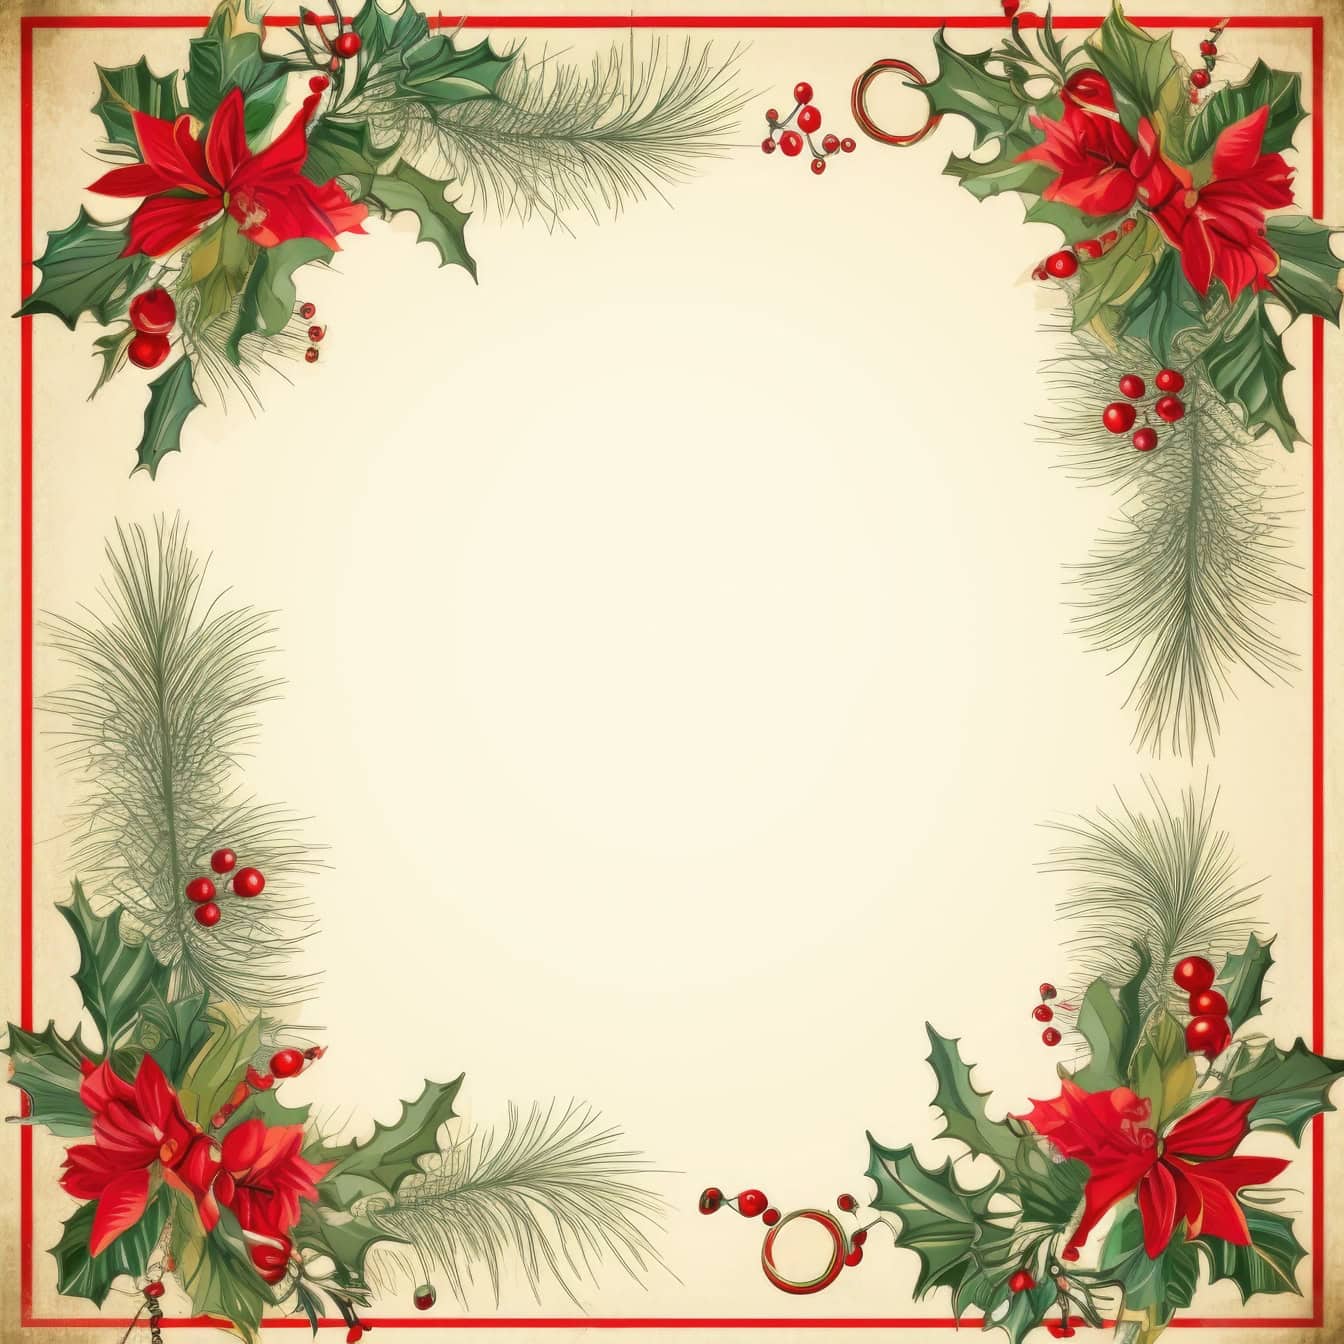 Modello ornamentale di biglietto d’auguri di Natale e Capodanno in stile retrò con cornice quadrata con bacche rosse e foglie verdi